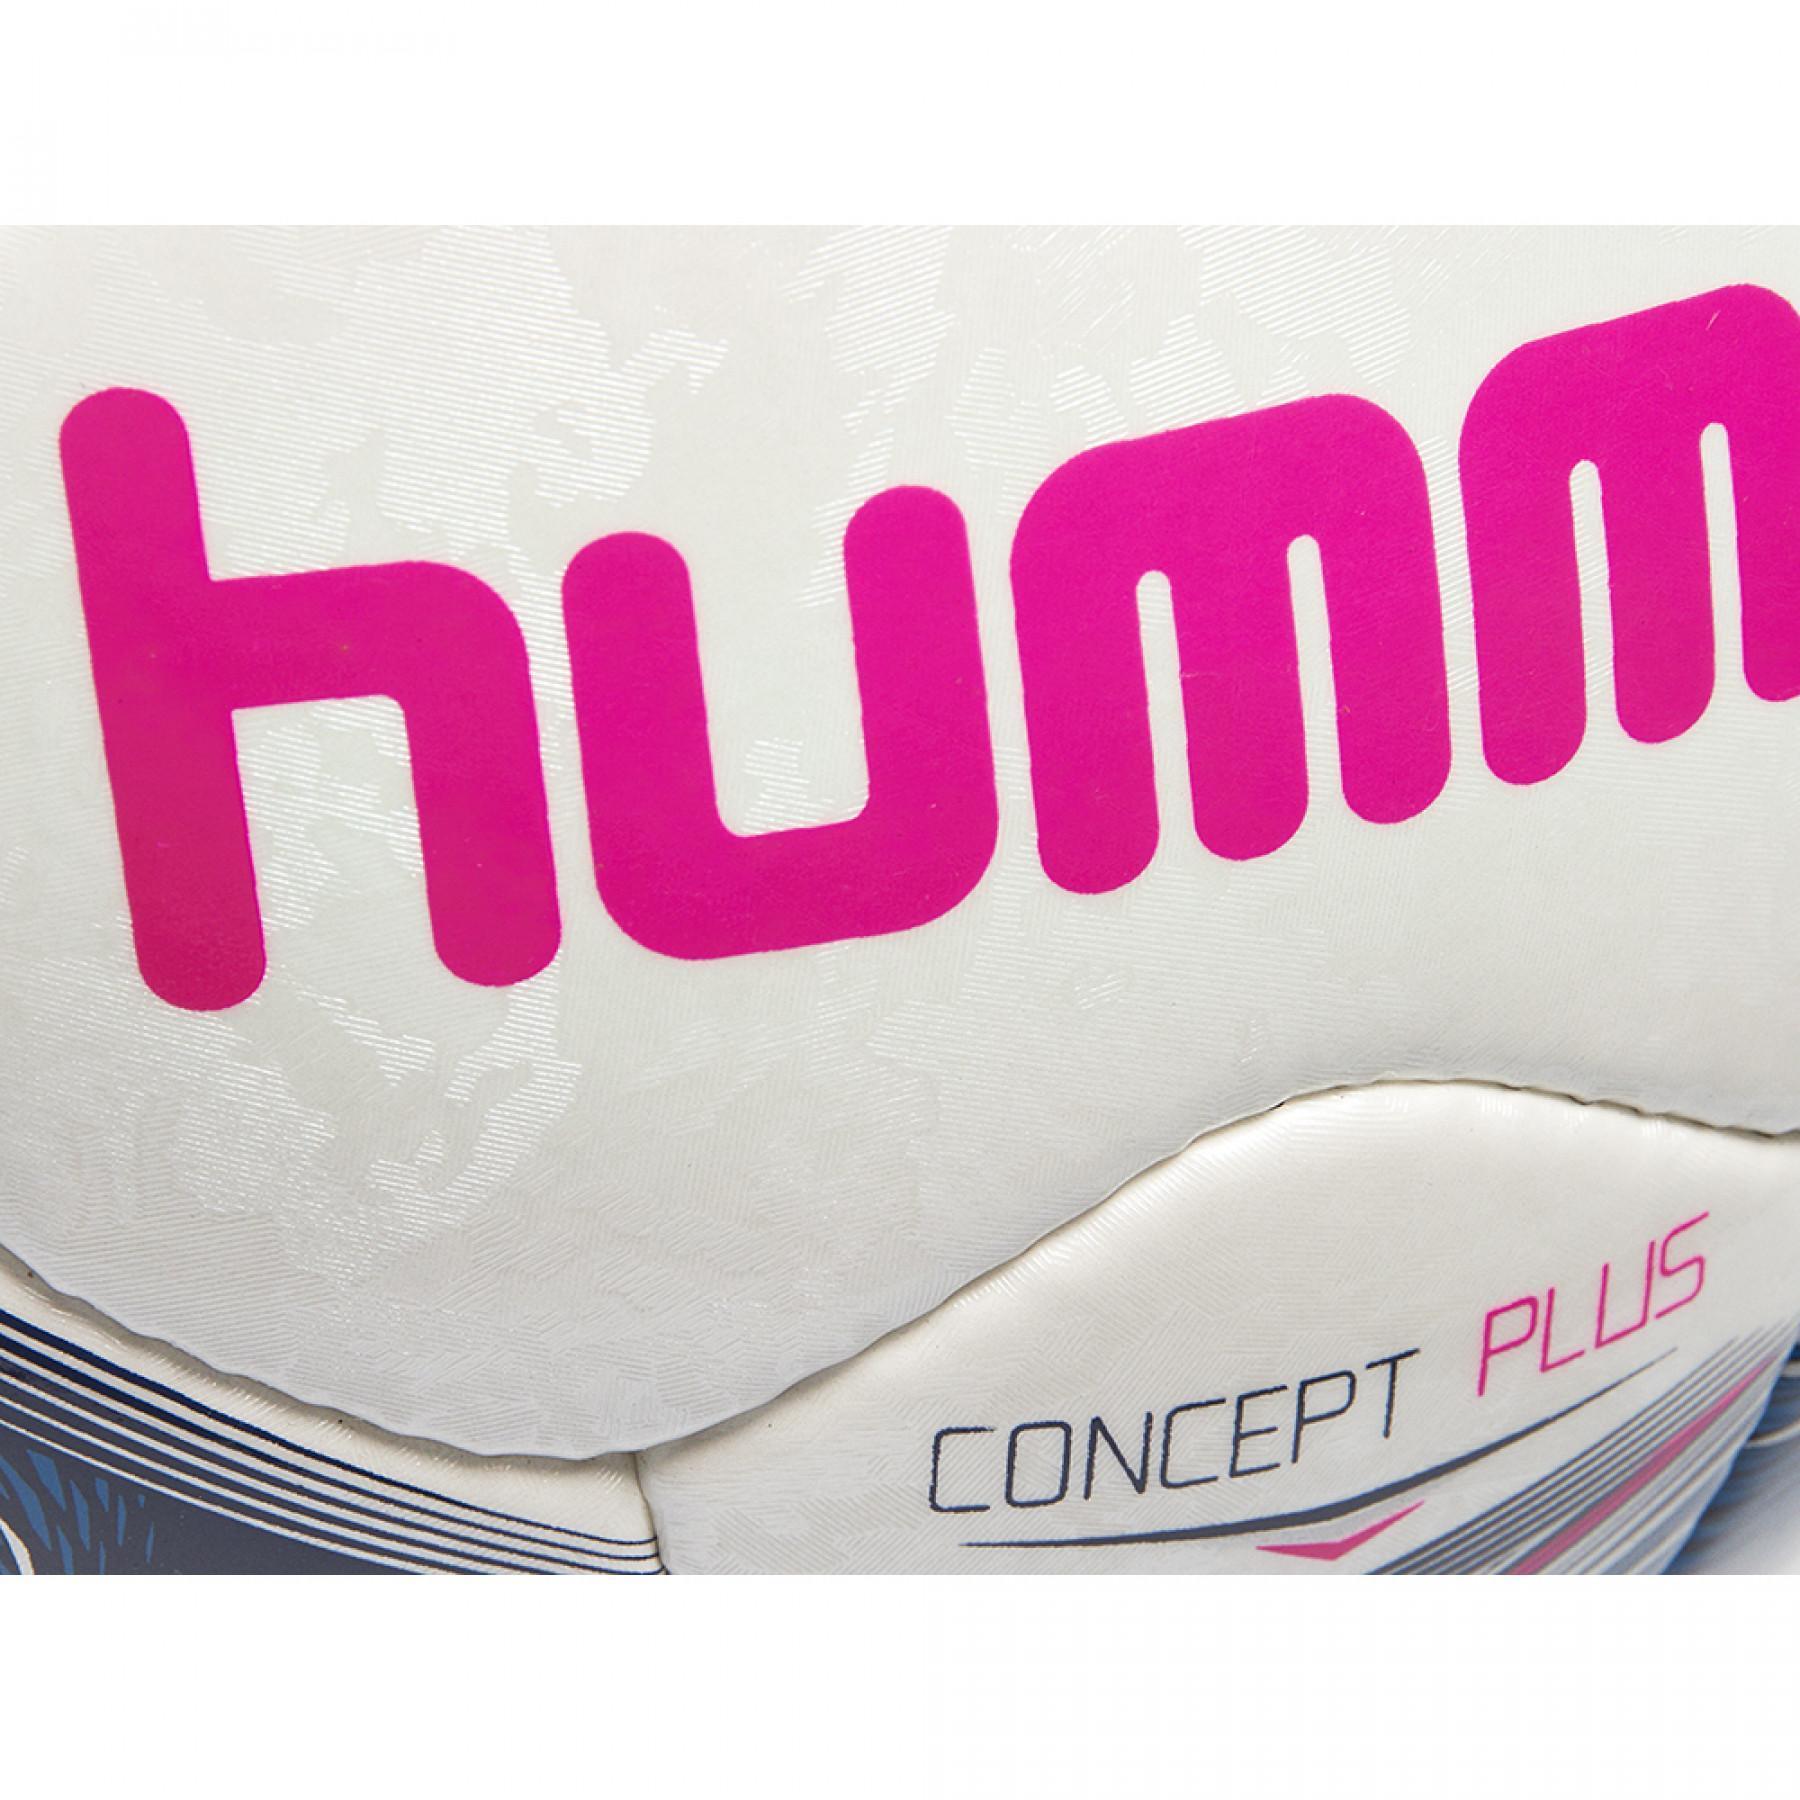 Voetbal Hummel concept plus